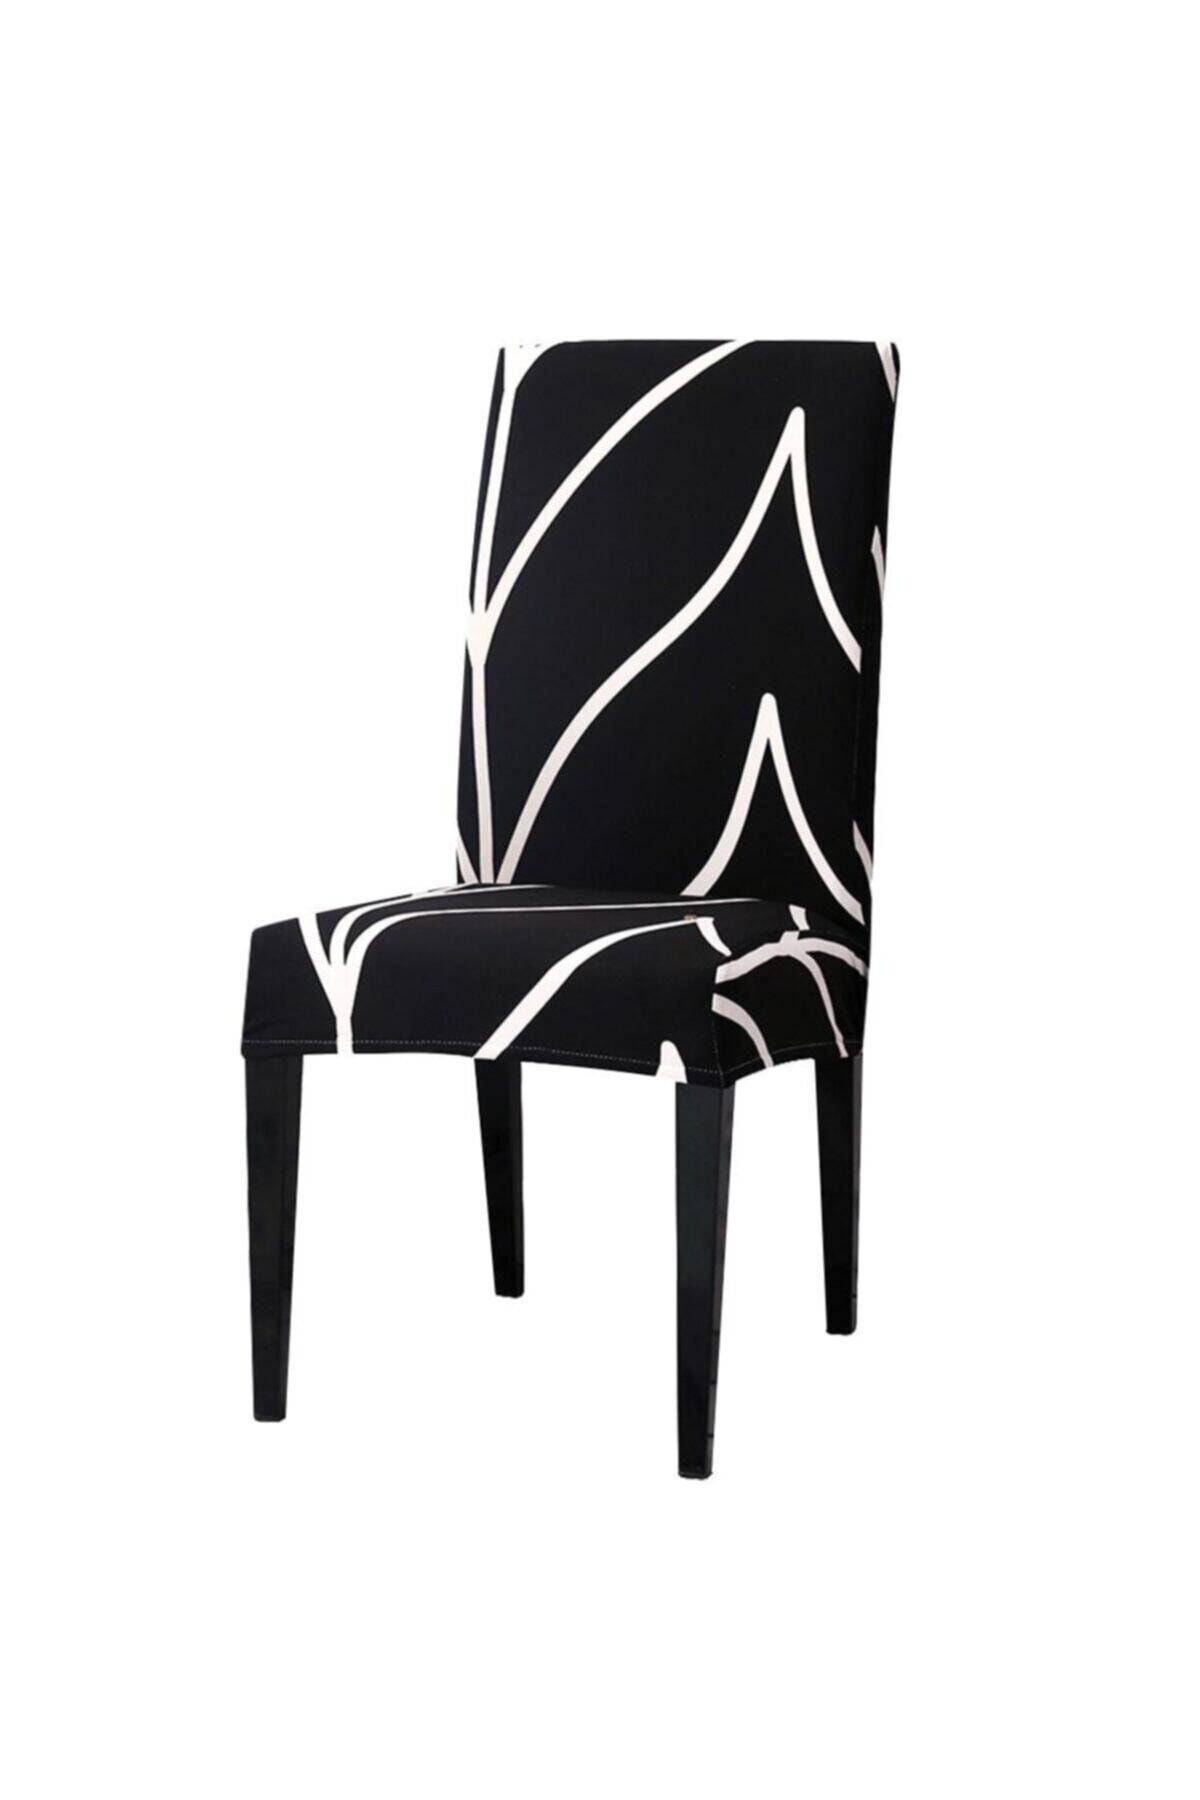 sabirehome Siyah Taban Beyaz Çizgi Desenli Salon Mutfak Sandalye Kılıfı 1 Adet Likralı Kumaş Tekli Örtü